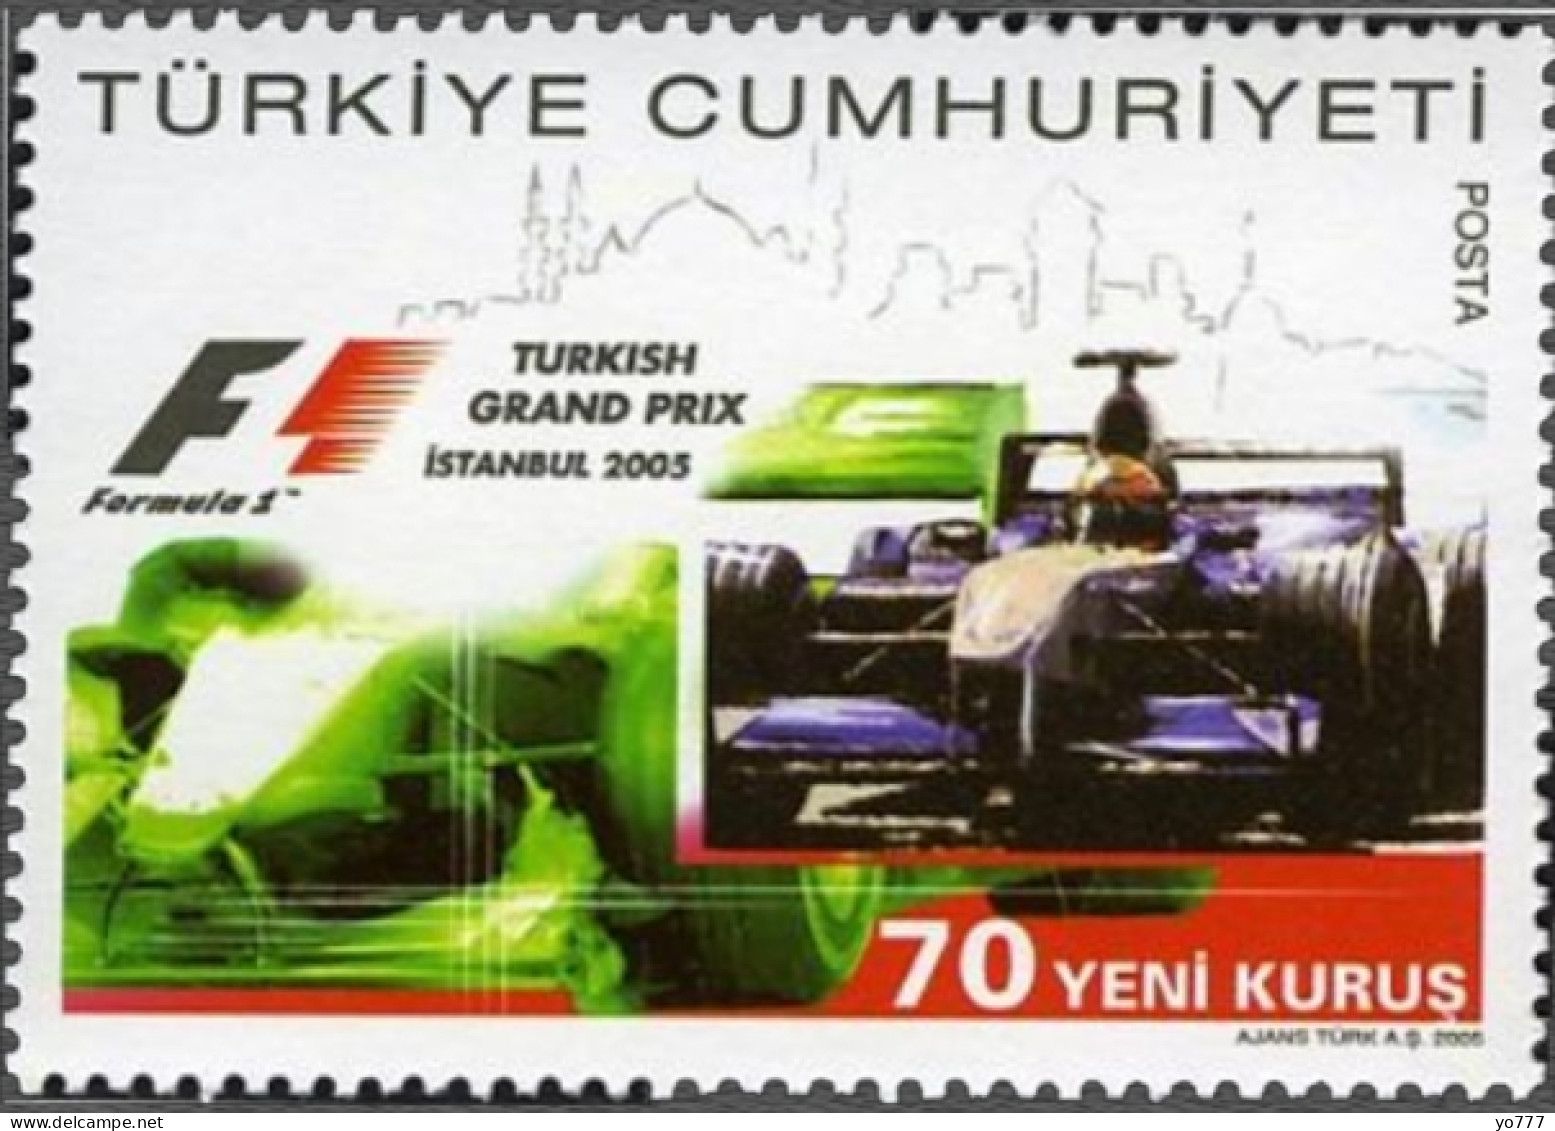 (3456) TURKEY FORMULA 1 GRAND PRIX MNH** - Ungebraucht